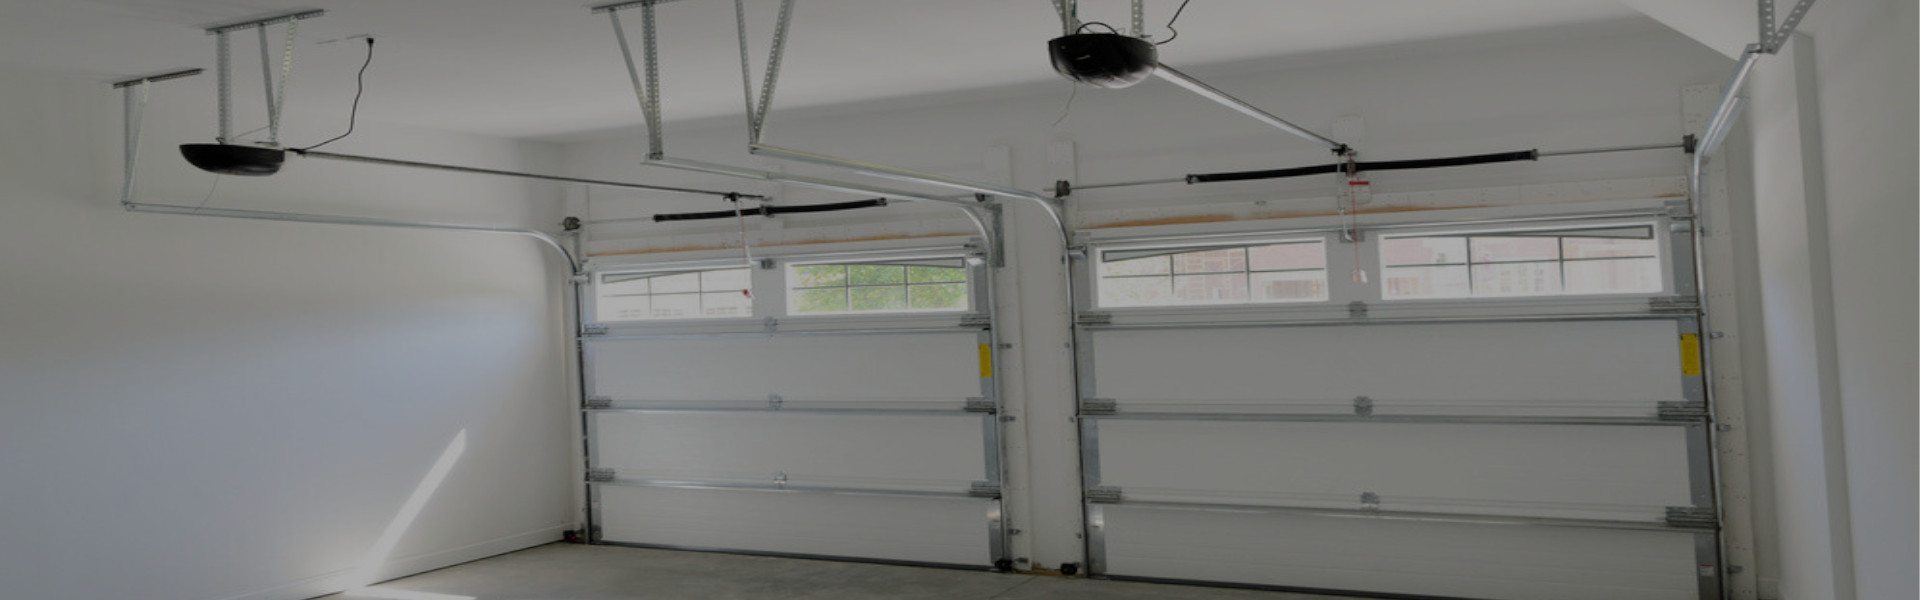 Slider Garage Door Repair, Glaziers in West Brompton, World's End, SW10